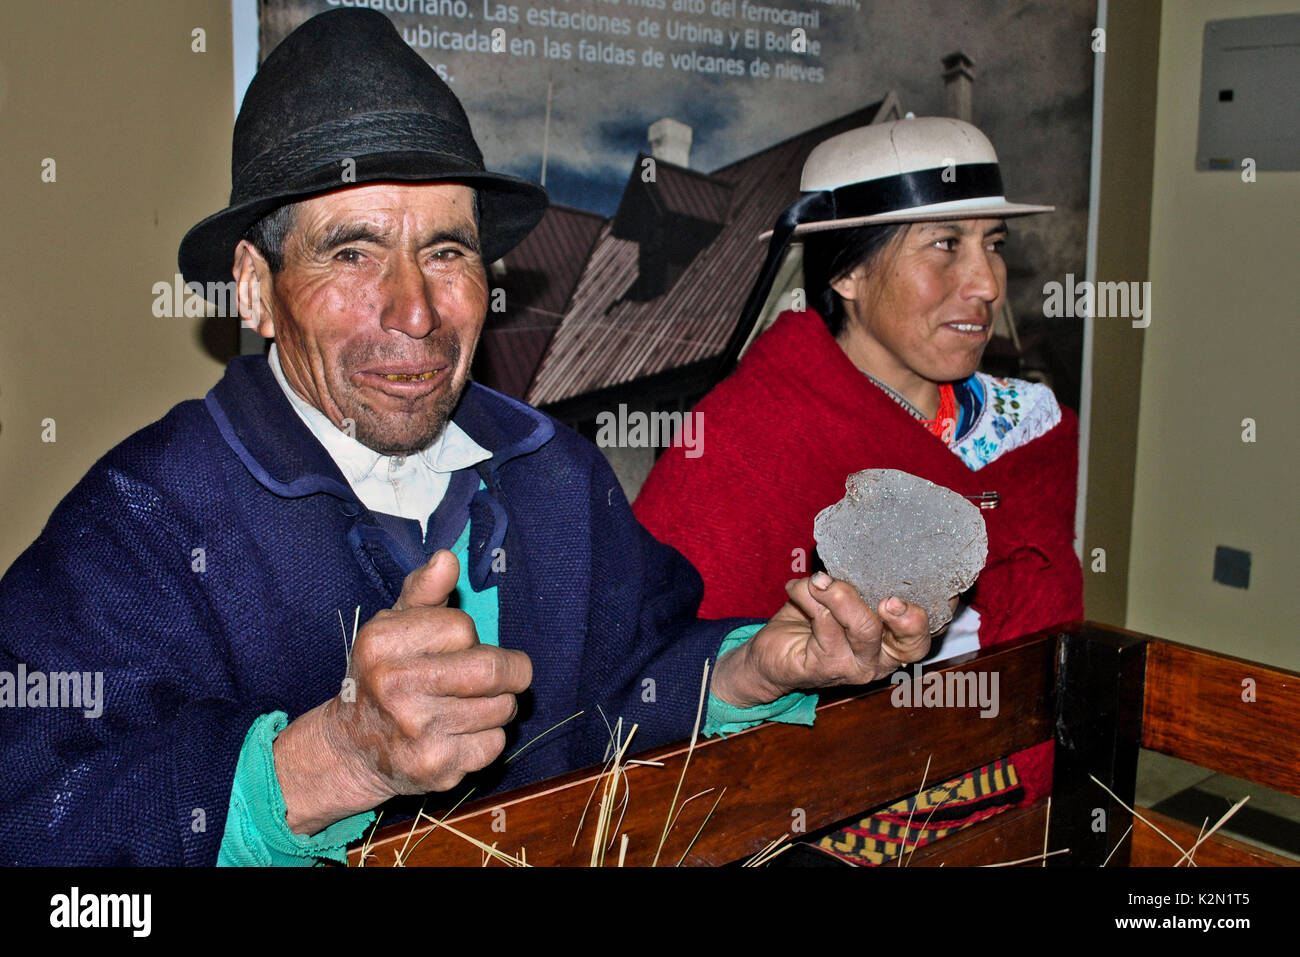 Baltasar Ushca, das letzte Eis des Chimborazo, Kaufmann und seine Tochter. Er zeigt ein Stück Natur Eis von Chimborazo der Eiszeit. Chimborazo. Stockfoto